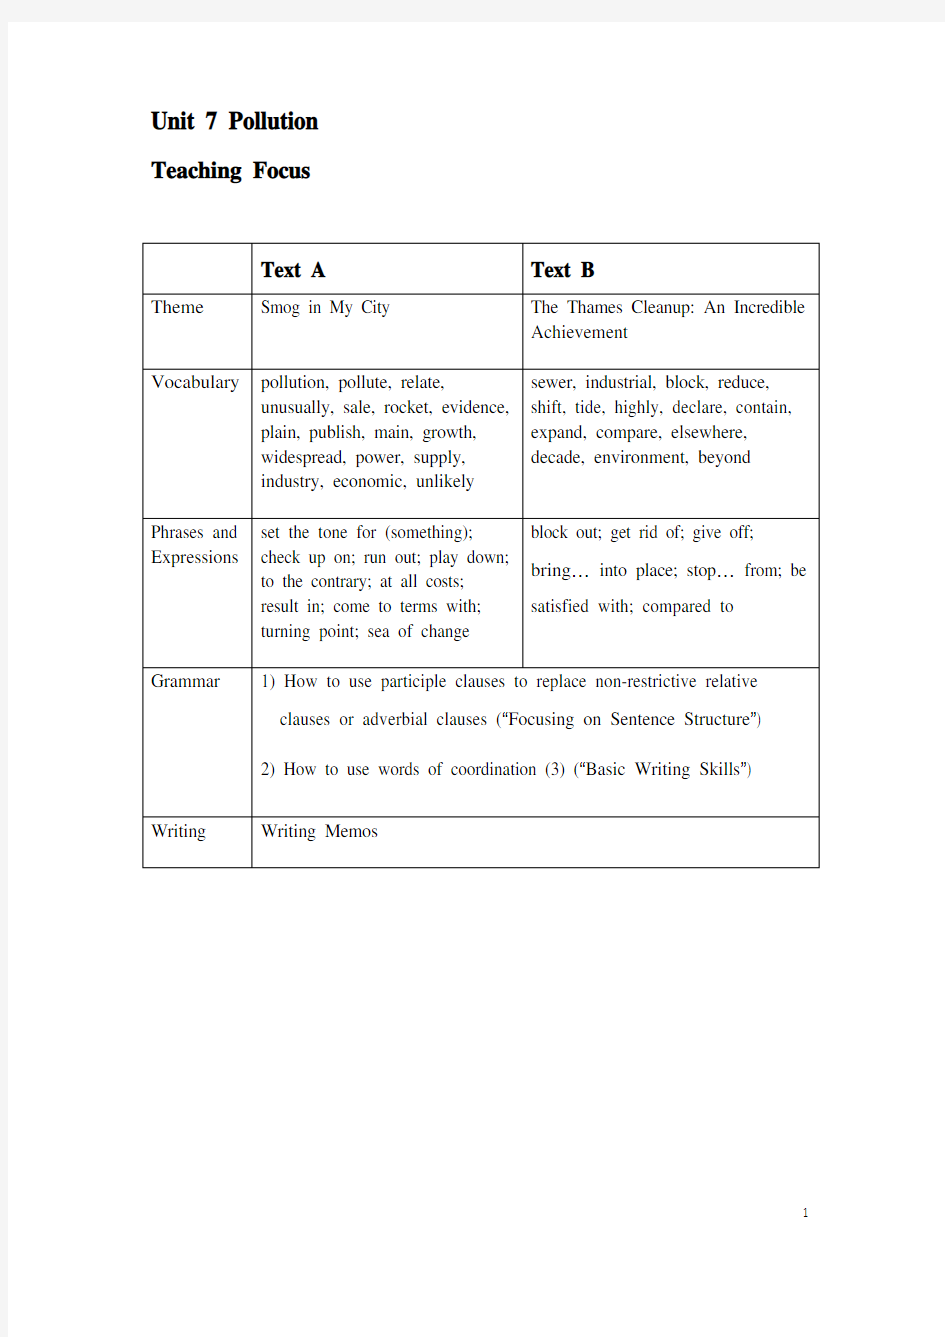 新视野英语教程读写教程2(第三版)U7_电子教案